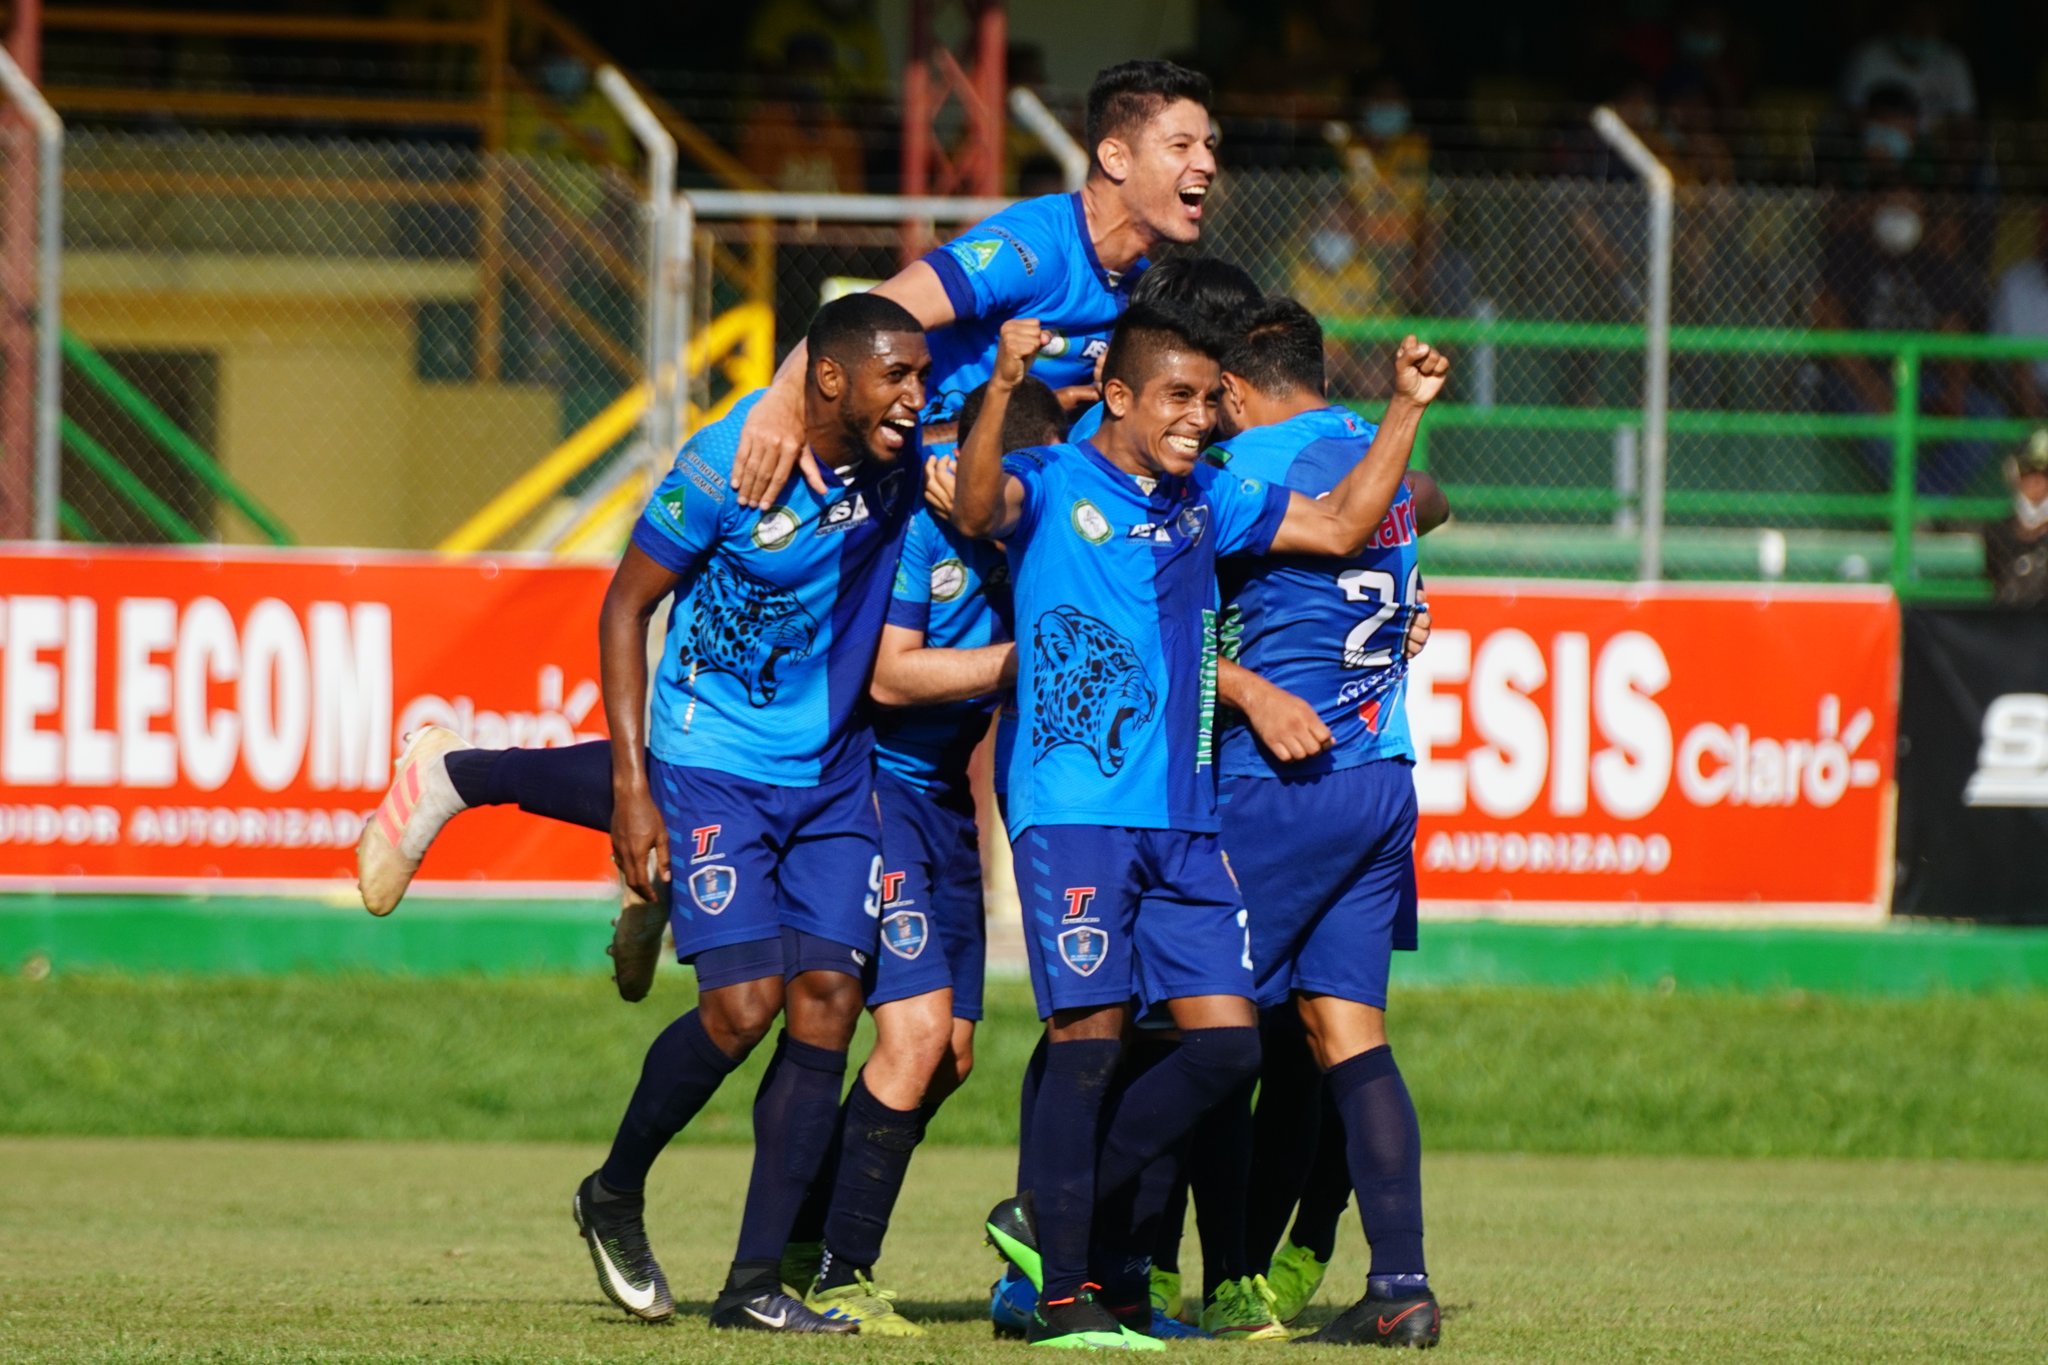 Los jugadores de Santa Lucía celebran el gol del Anllel Porras en el duelo contra Guastatoya. (Foto AndreNafd).